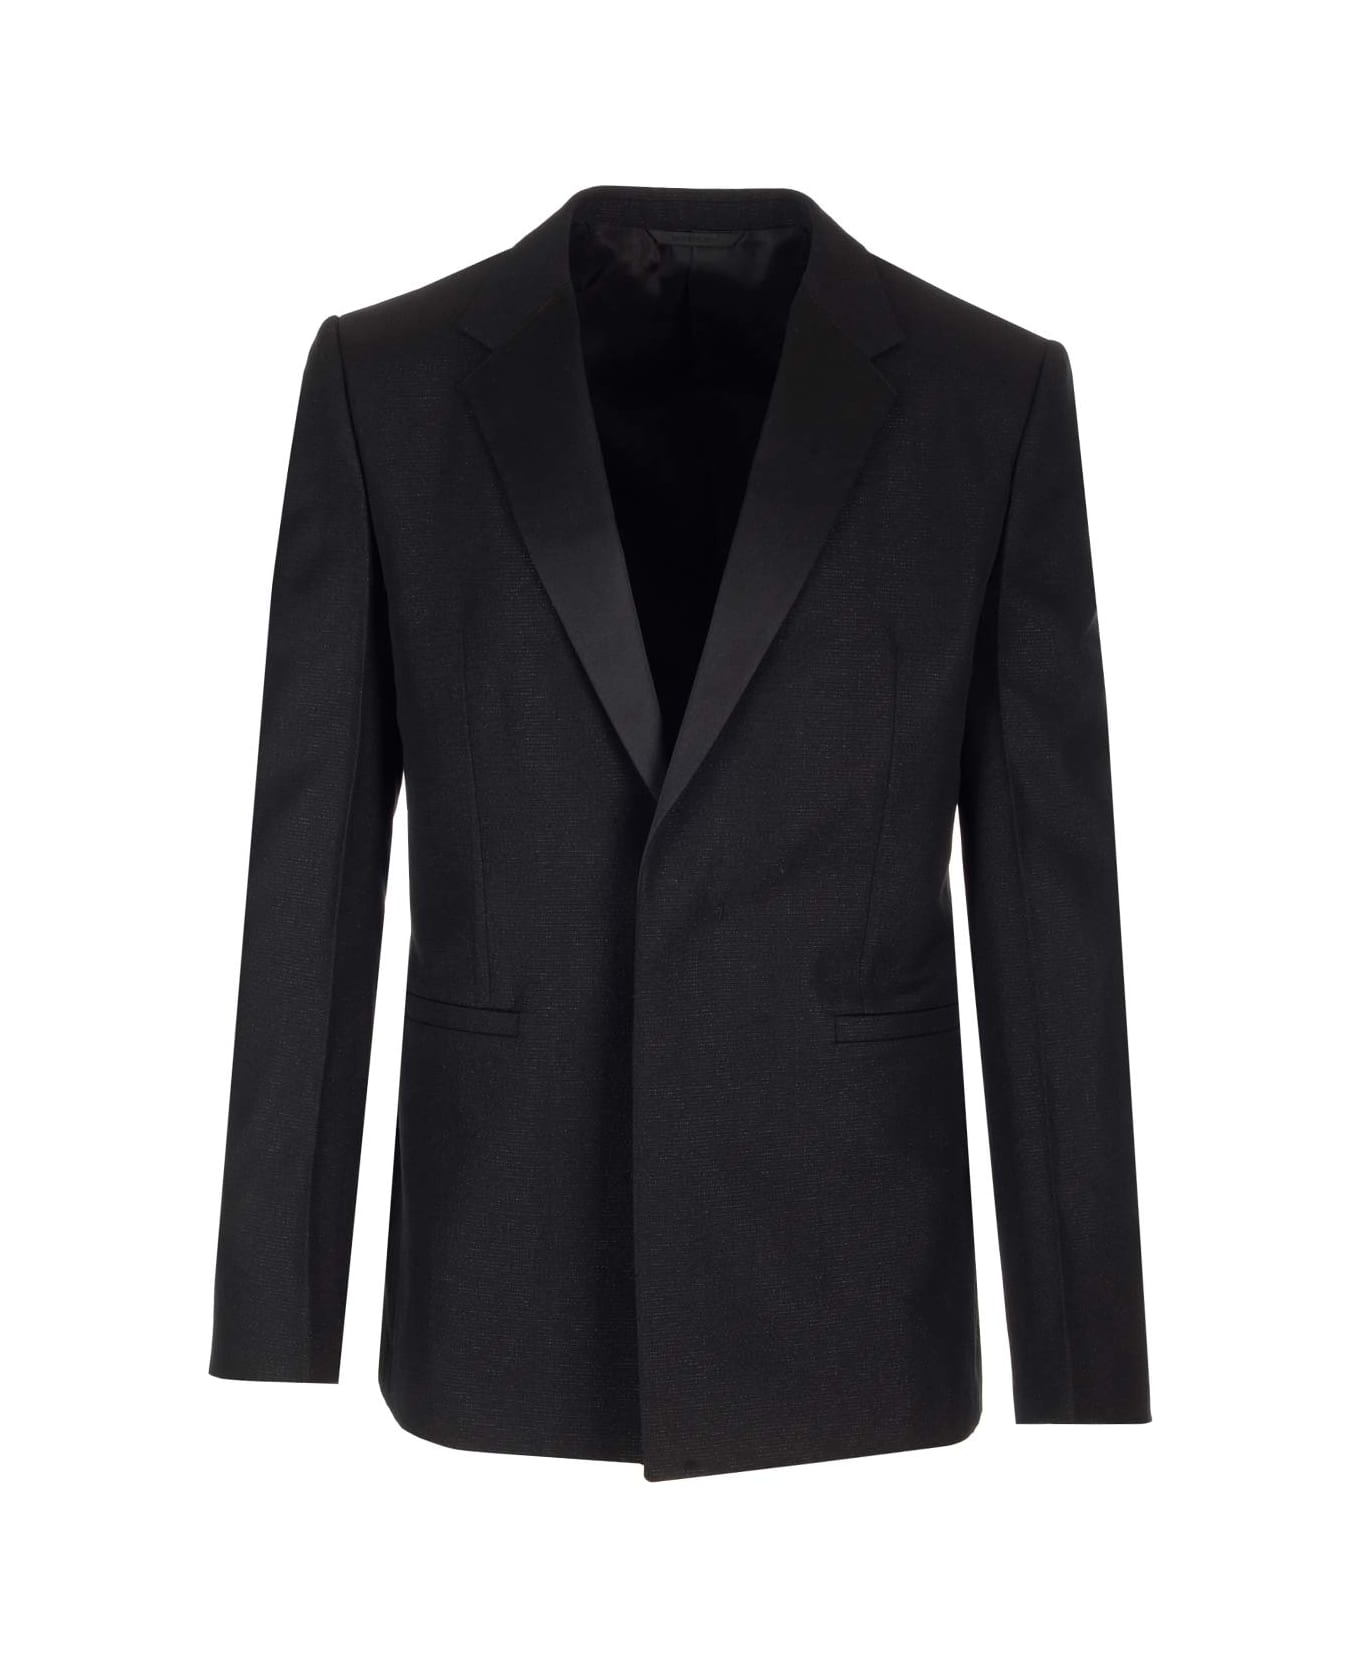 Givenchy Black Wool Jacket - BLACK ブレザー